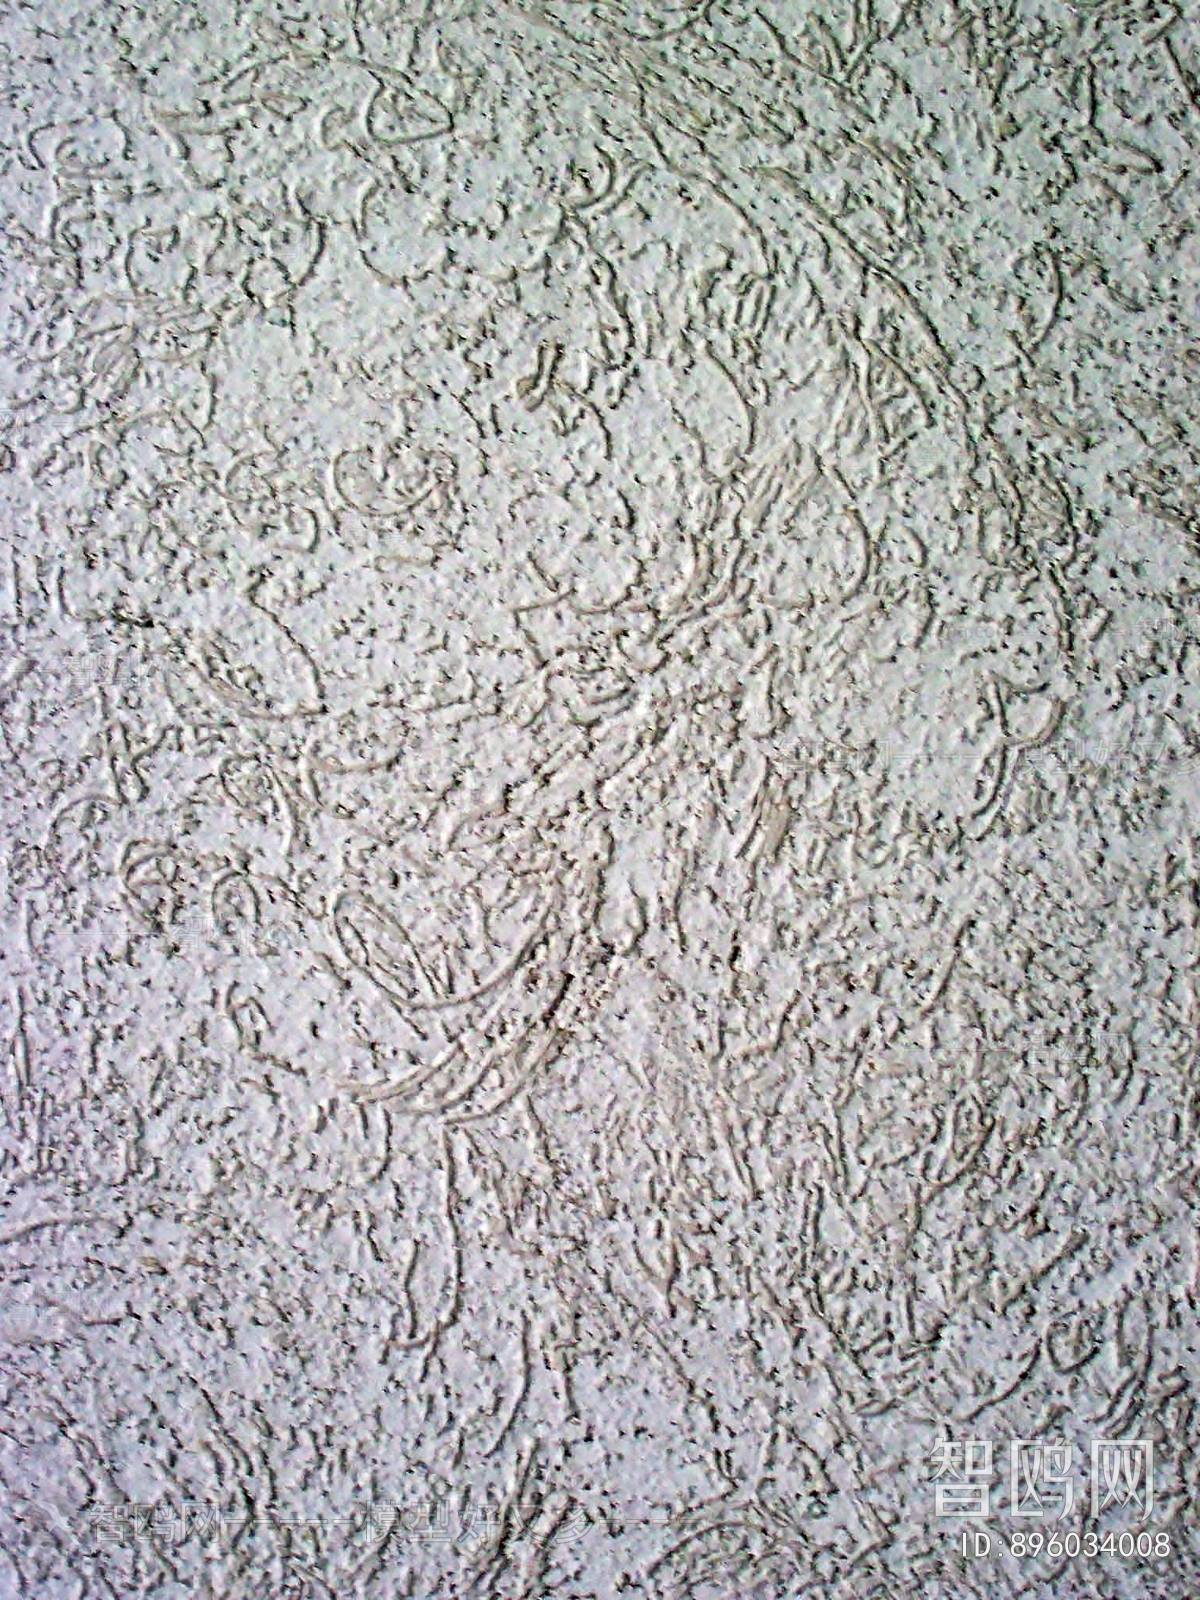 墙面硅藻泥涂料乳胶漆